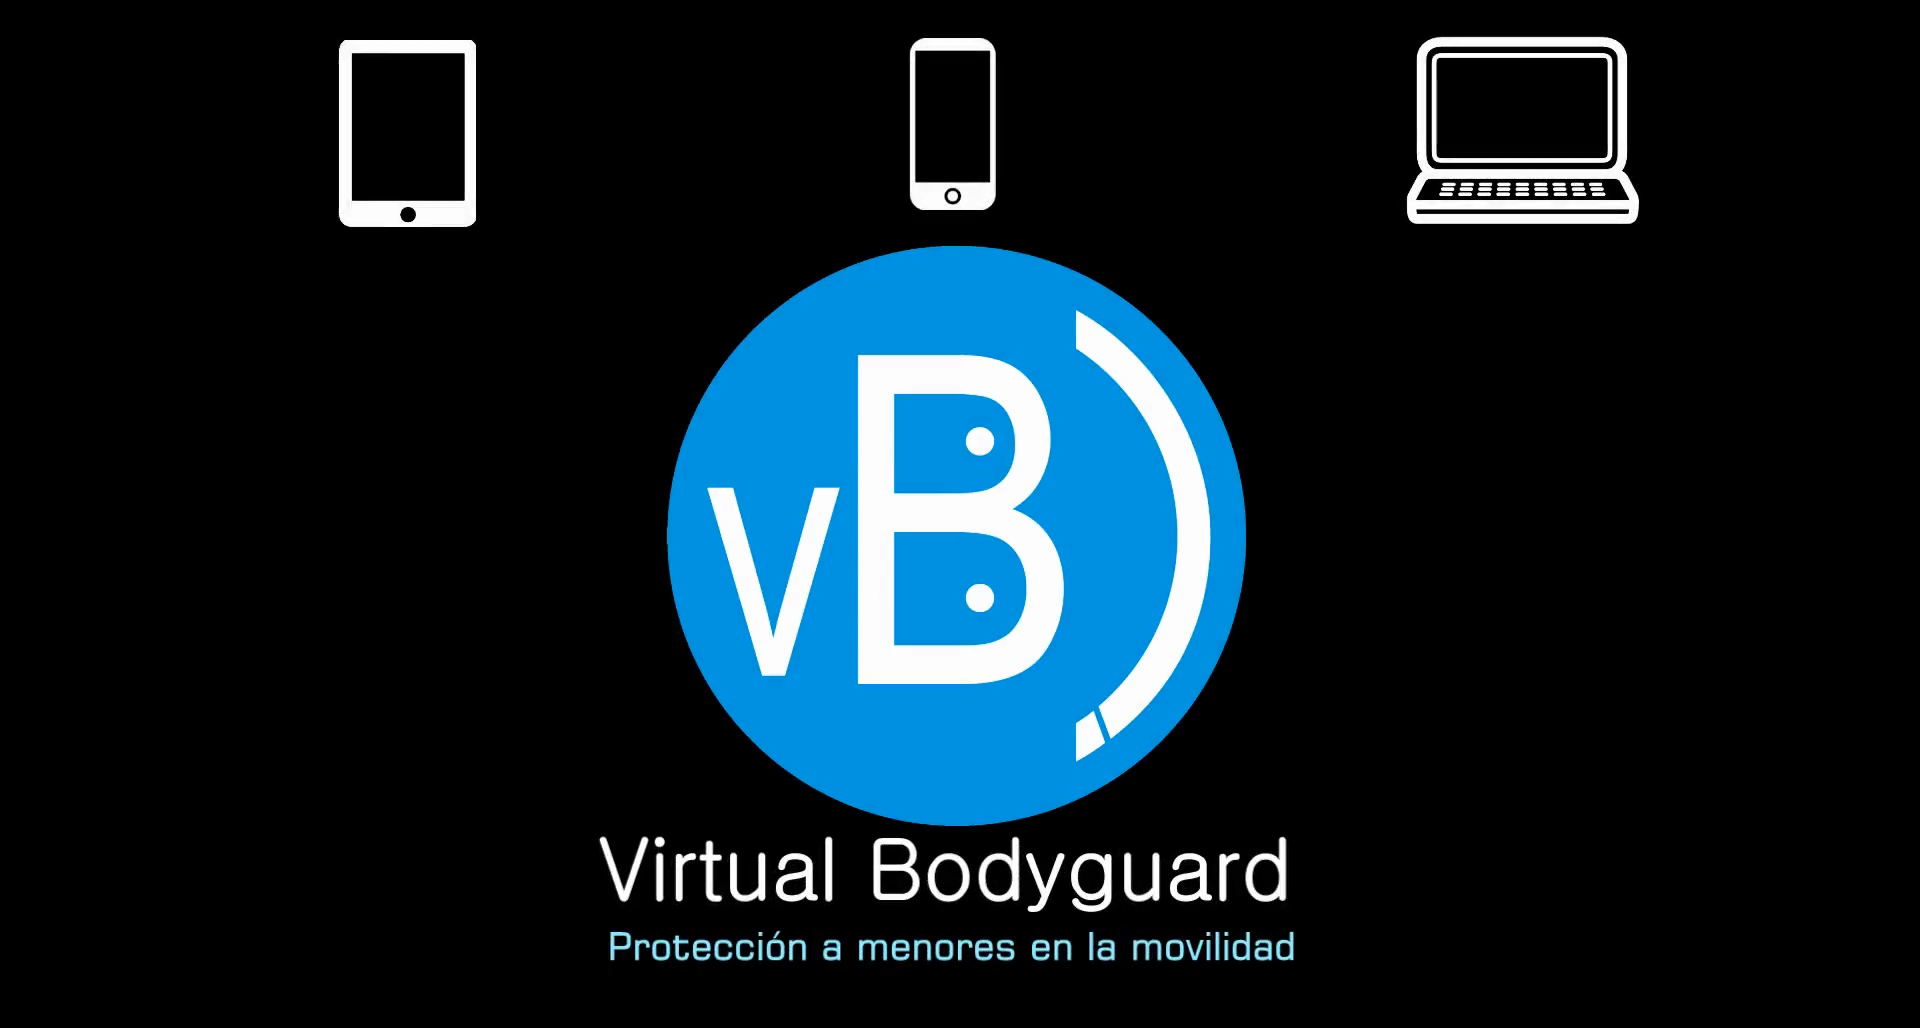 Virtual Bodyguard